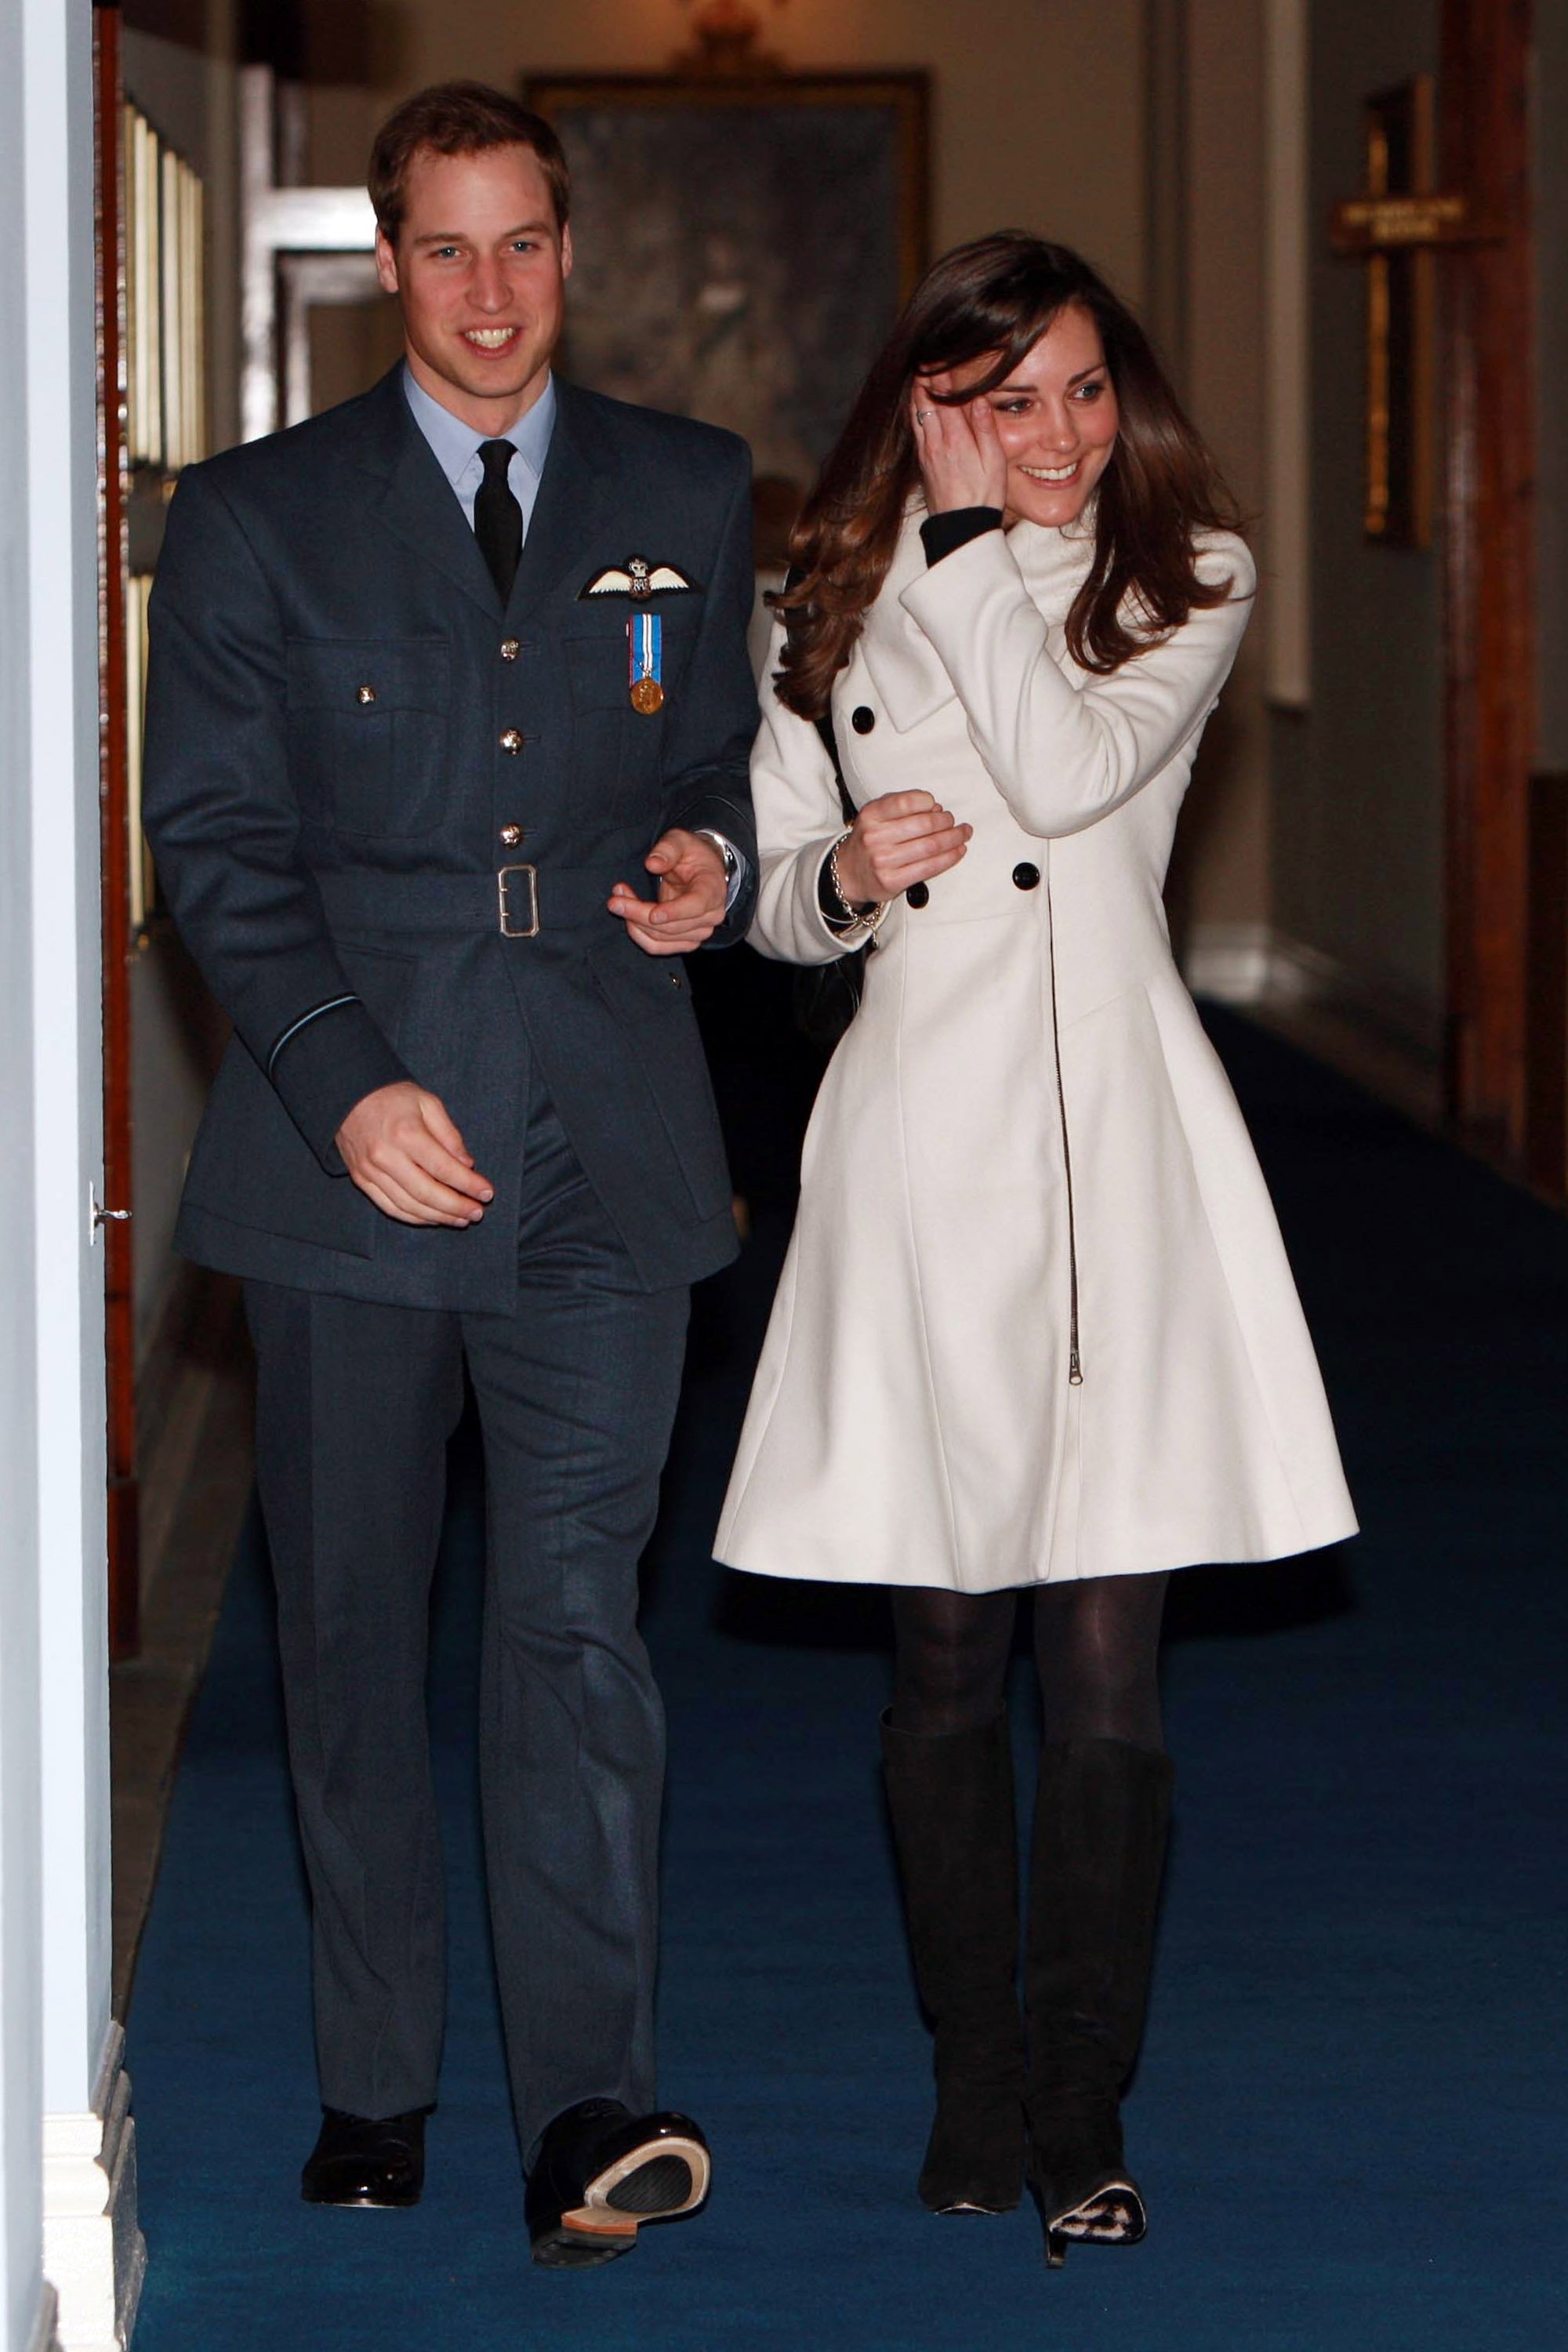 Le prince William et sa petite amie Kate Middleton après la cérémonie de remise des diplômes à la RAF Cranwell, le 11 avril 2008, à Cranwell, en Angleterre | Source : Getty Images